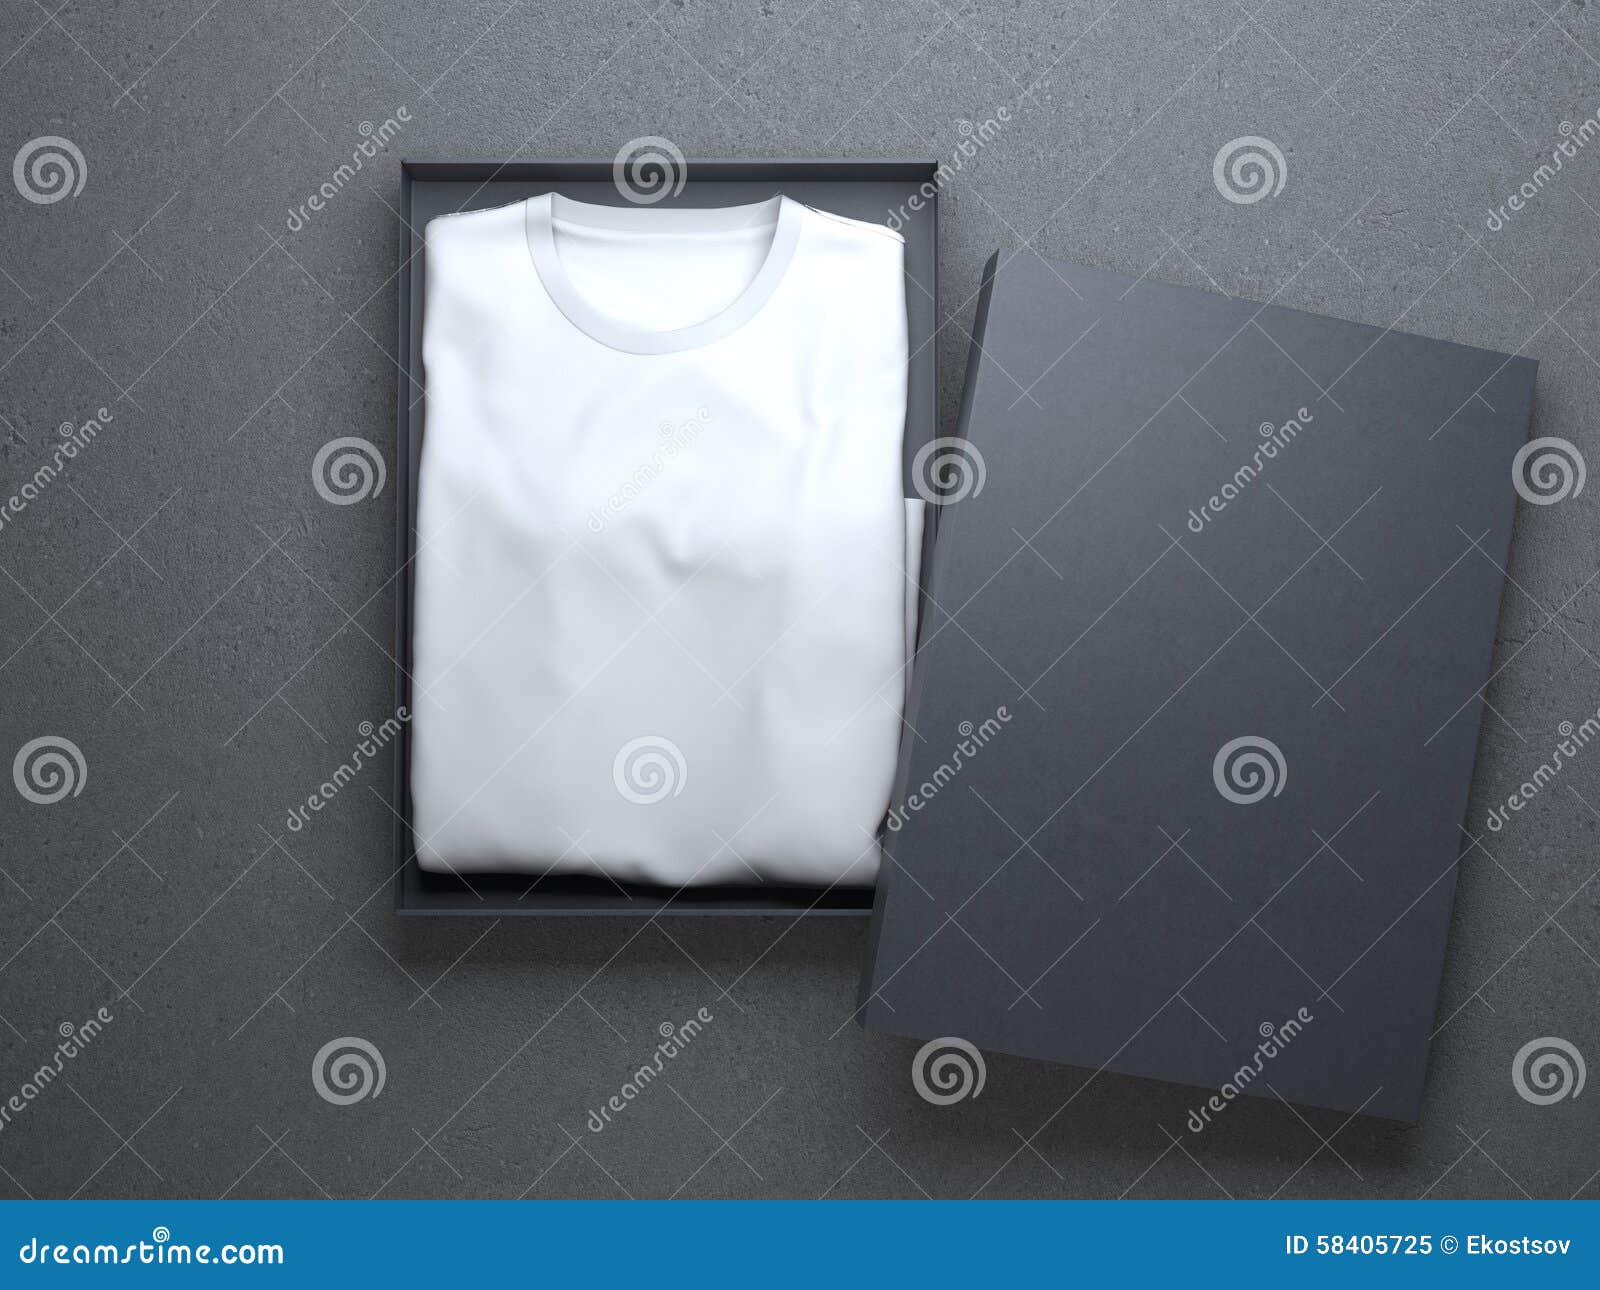 handleiding Bij elkaar passen vervagen White T-shirt in a Nice Cardboard Packaging Stock Image - Image of shirt,  shop: 58405725